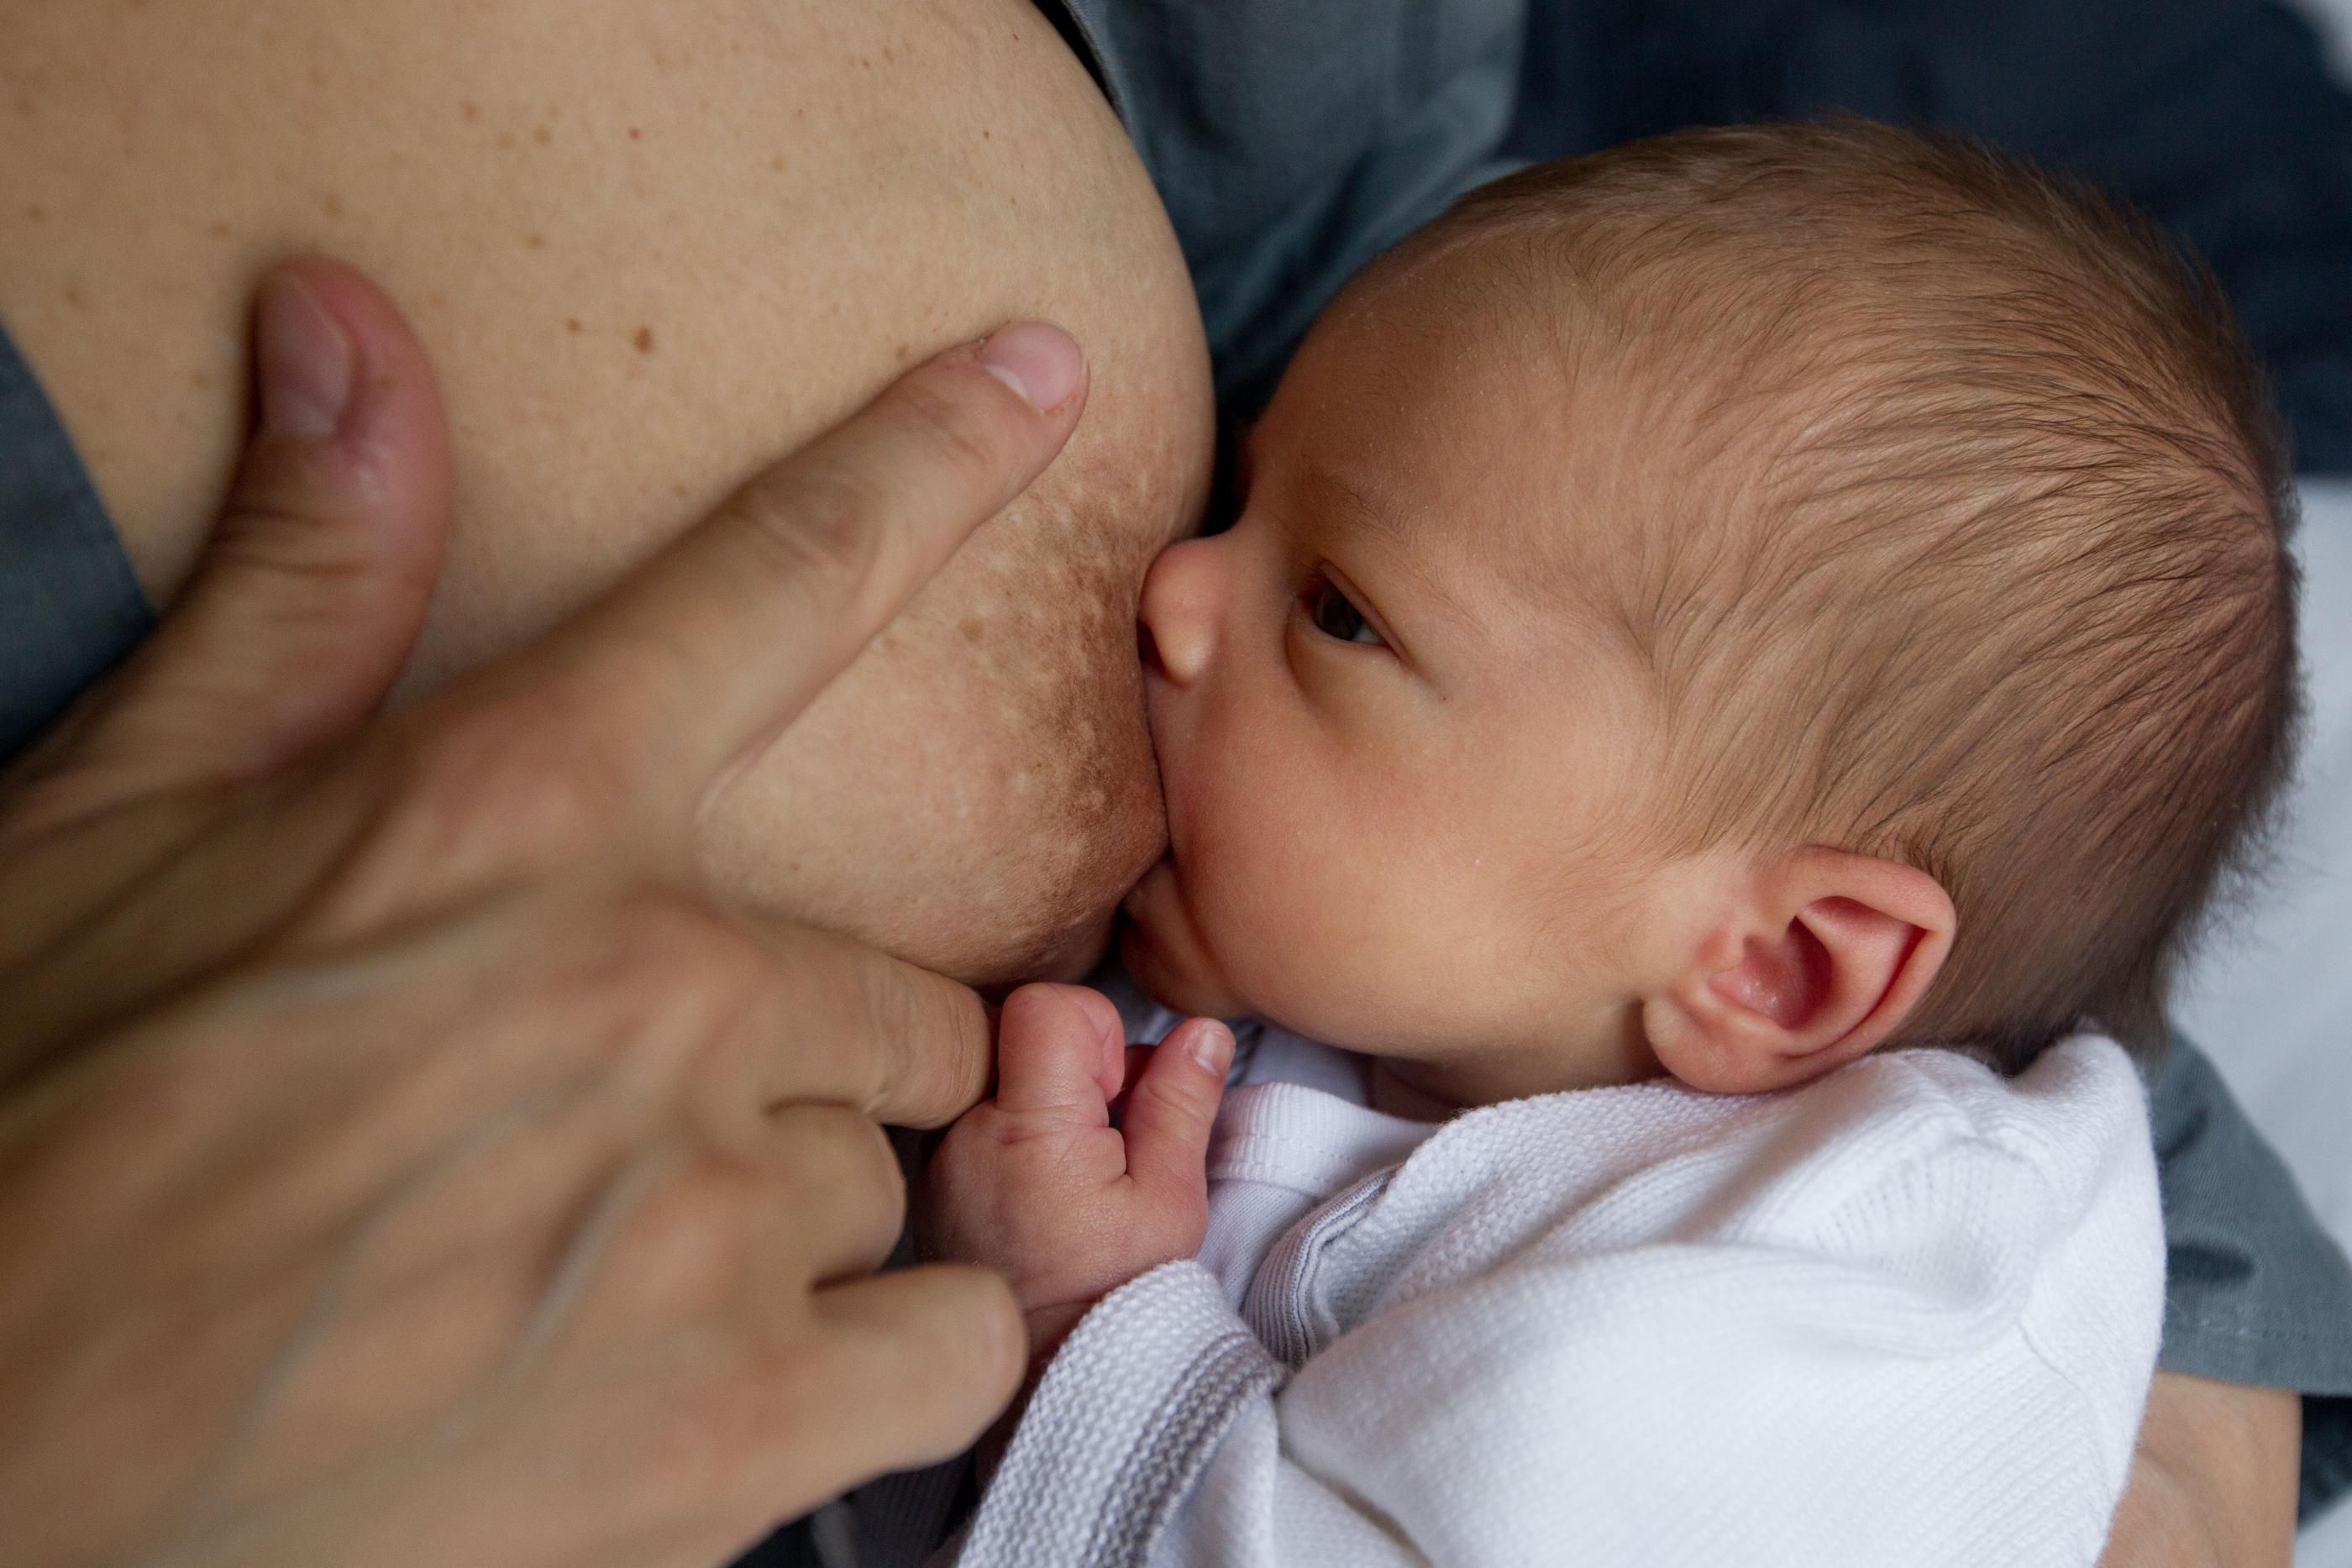 Dans la prestigieuse revue The Lancet, les scientifiques ont appelé à encourager au maximum l’allaitement maternel. (Archive) LP/Matthieu de Martignac